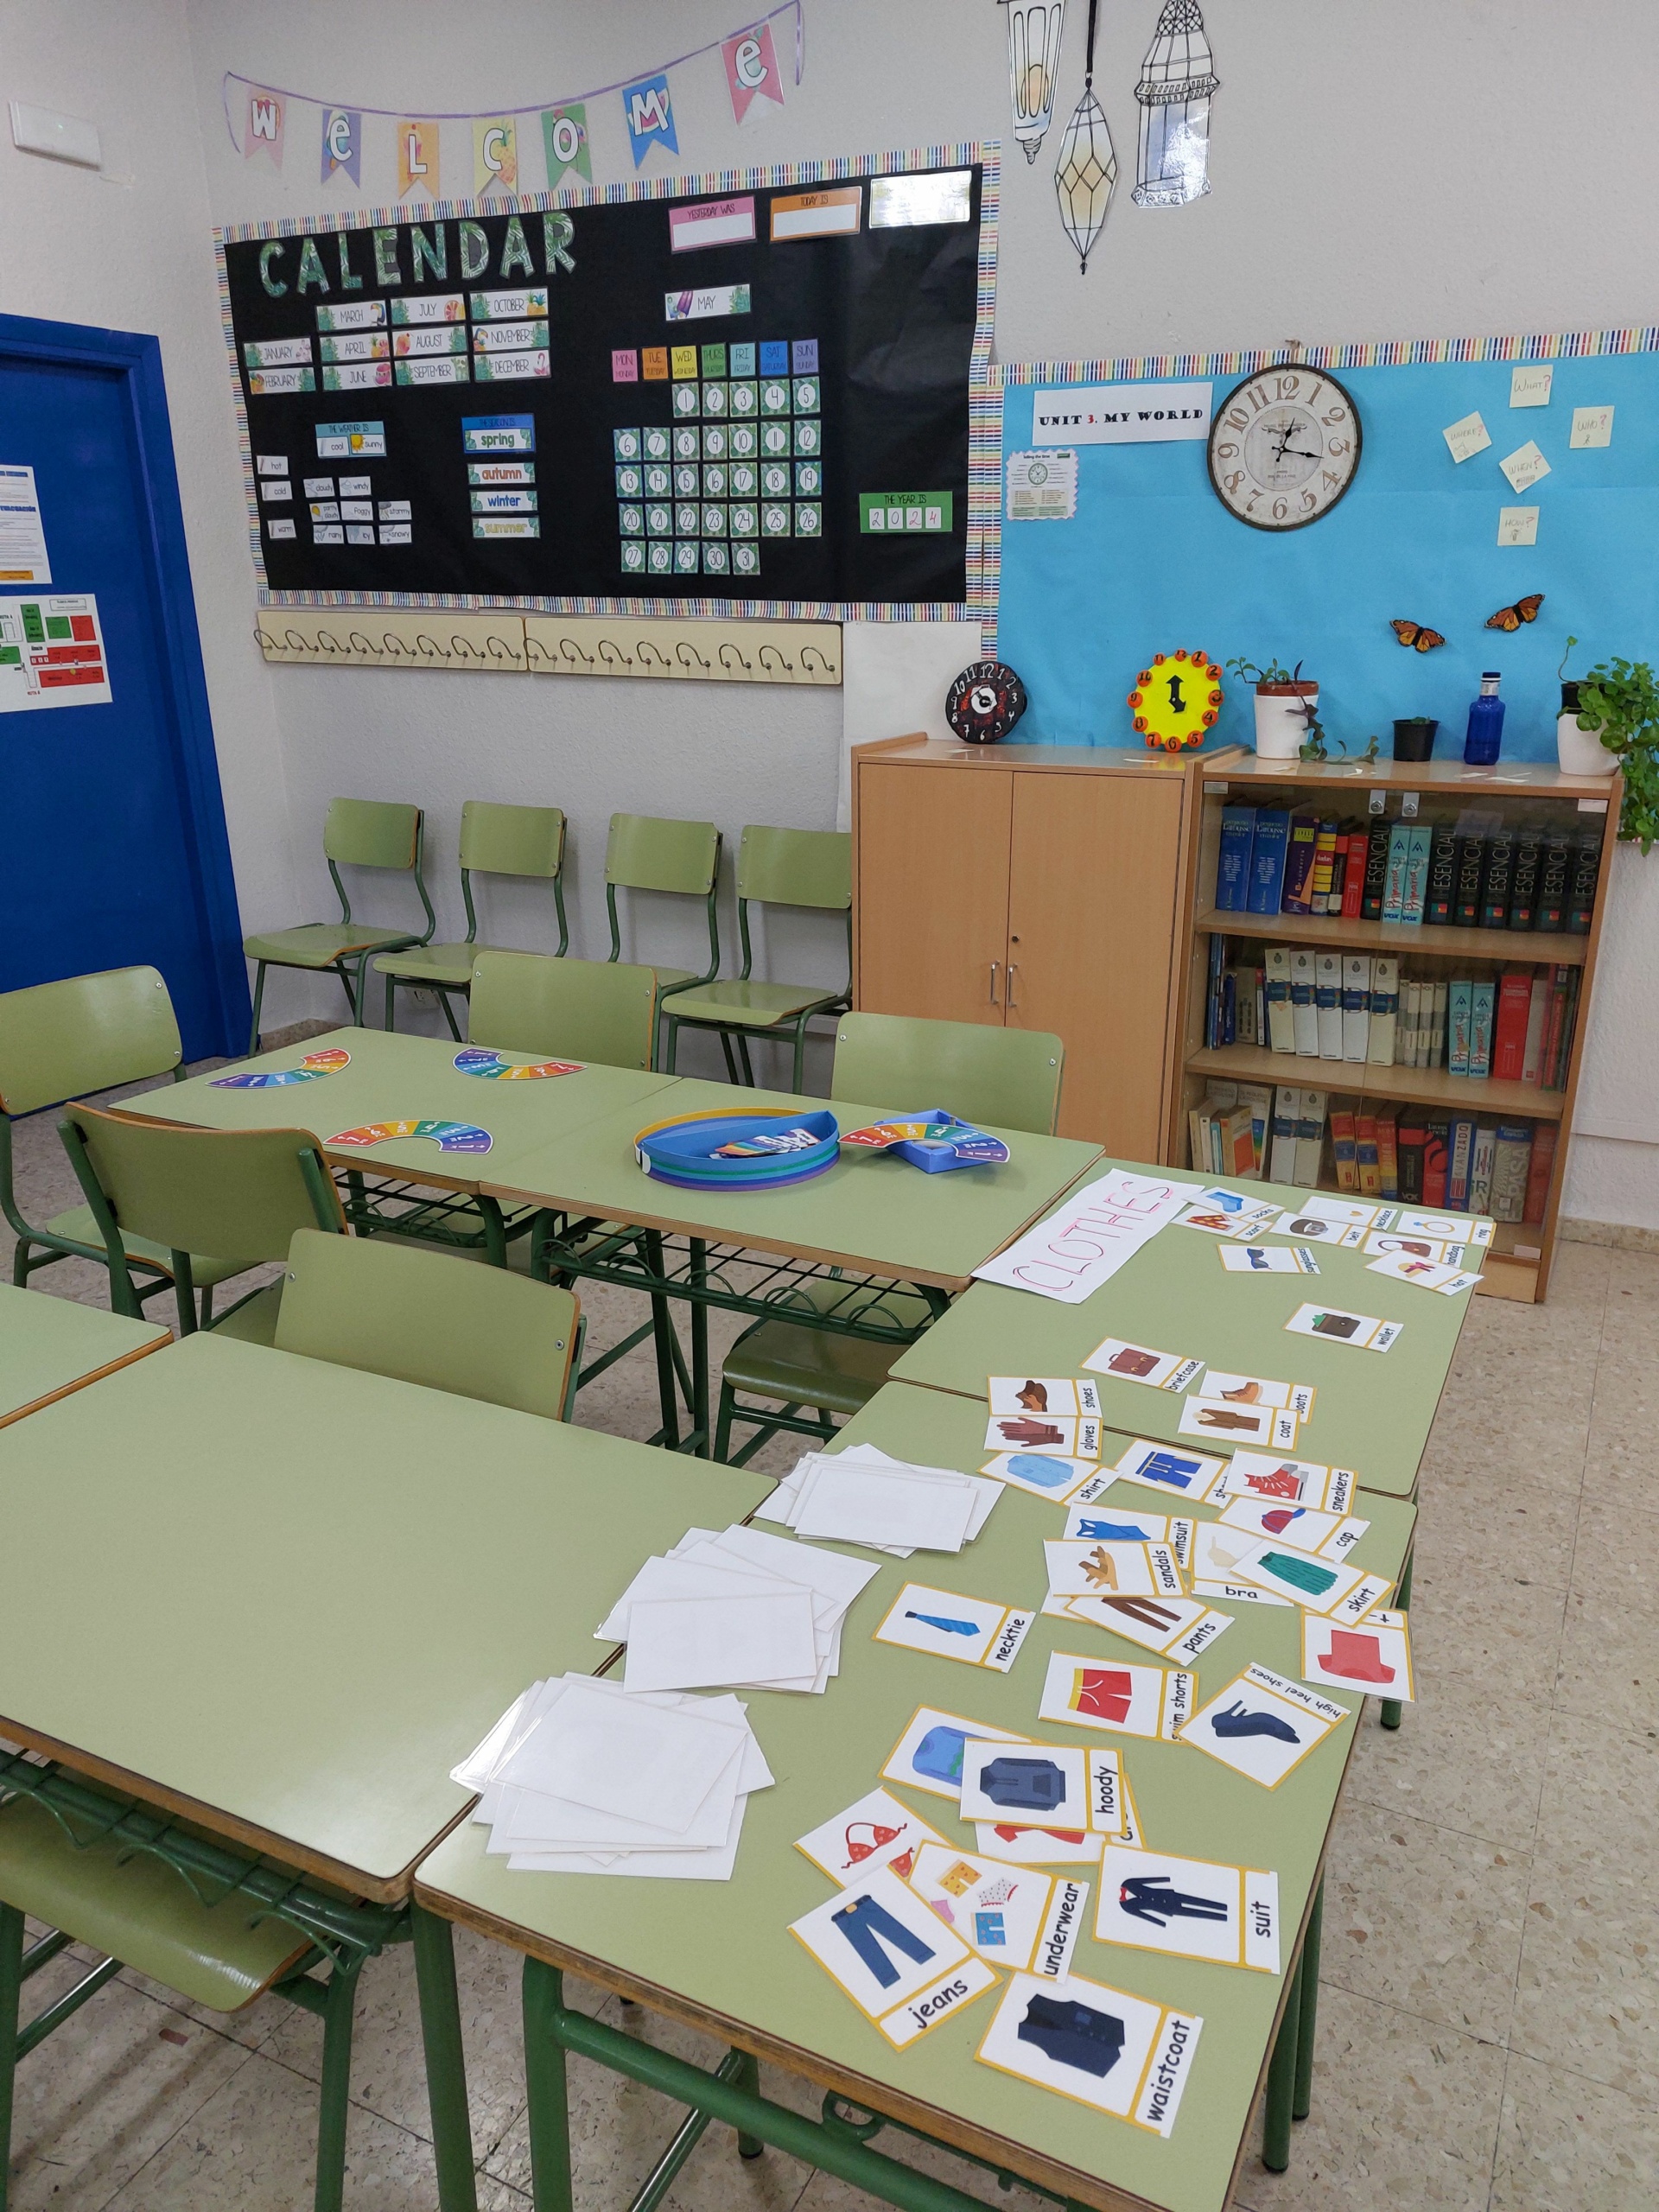 Luokkahuone, pöydillä kuvakortteja